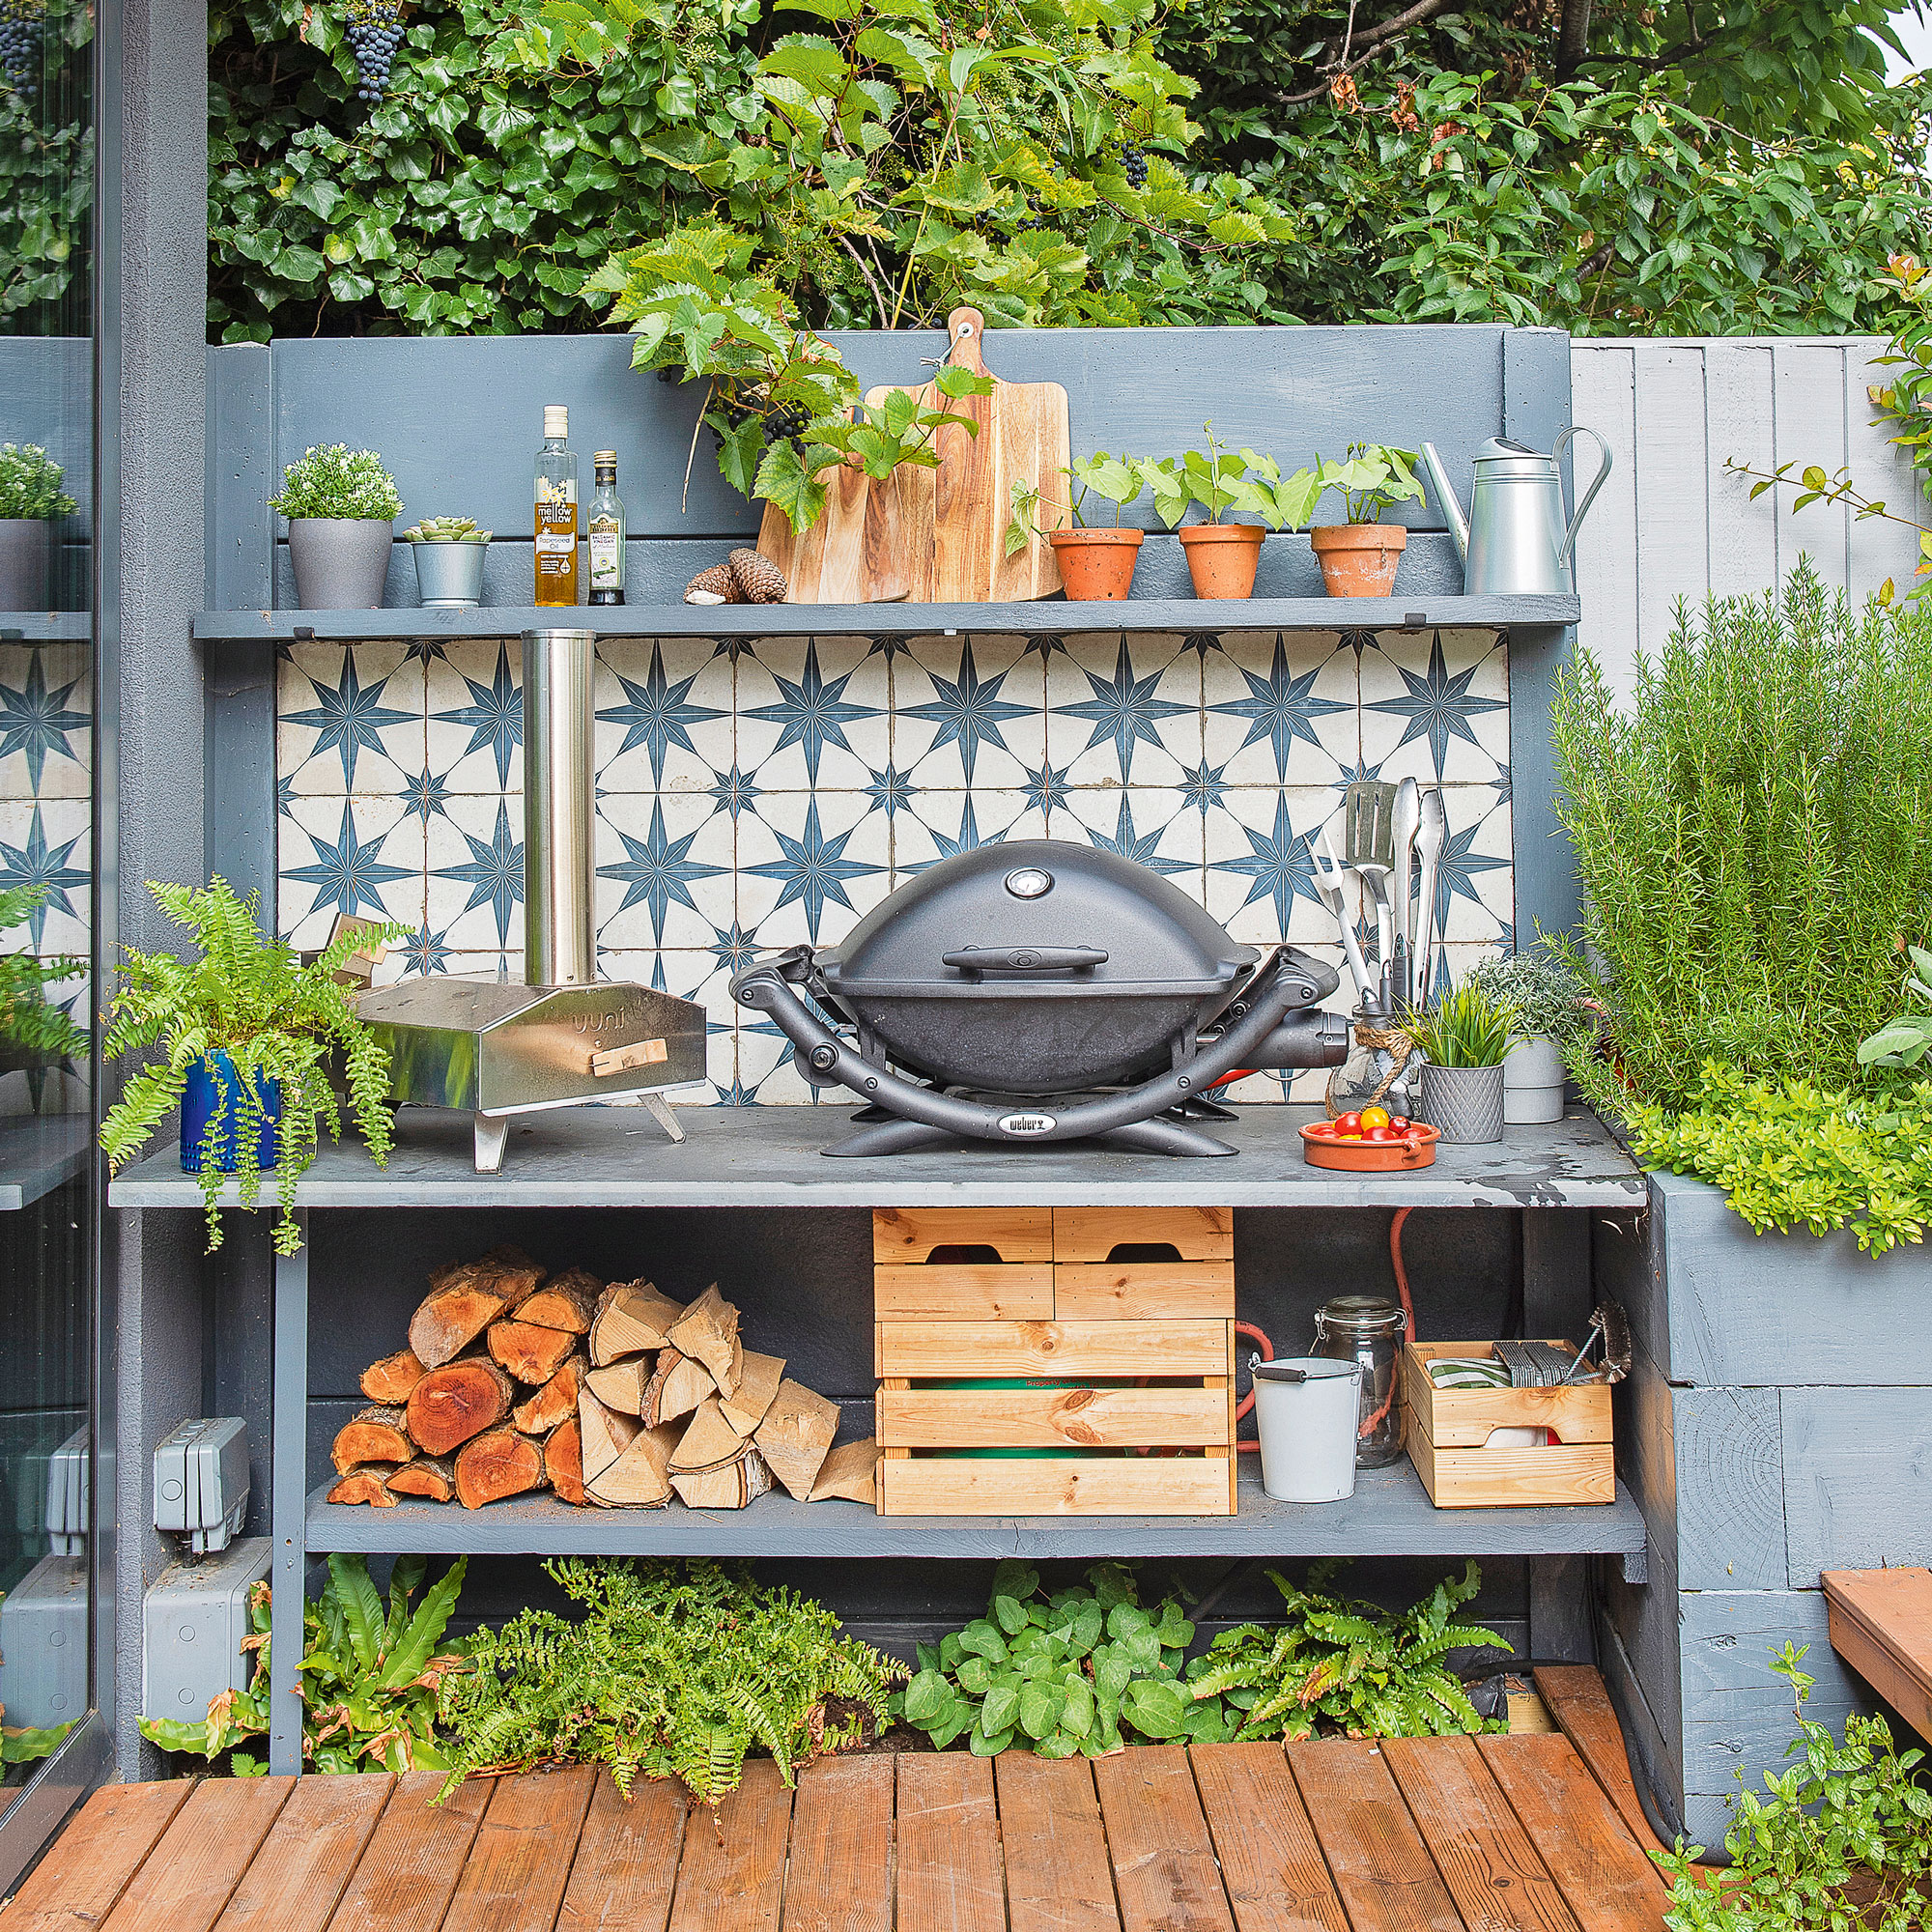 DIY Garden Decor| Garden Label - At Home with Jemma